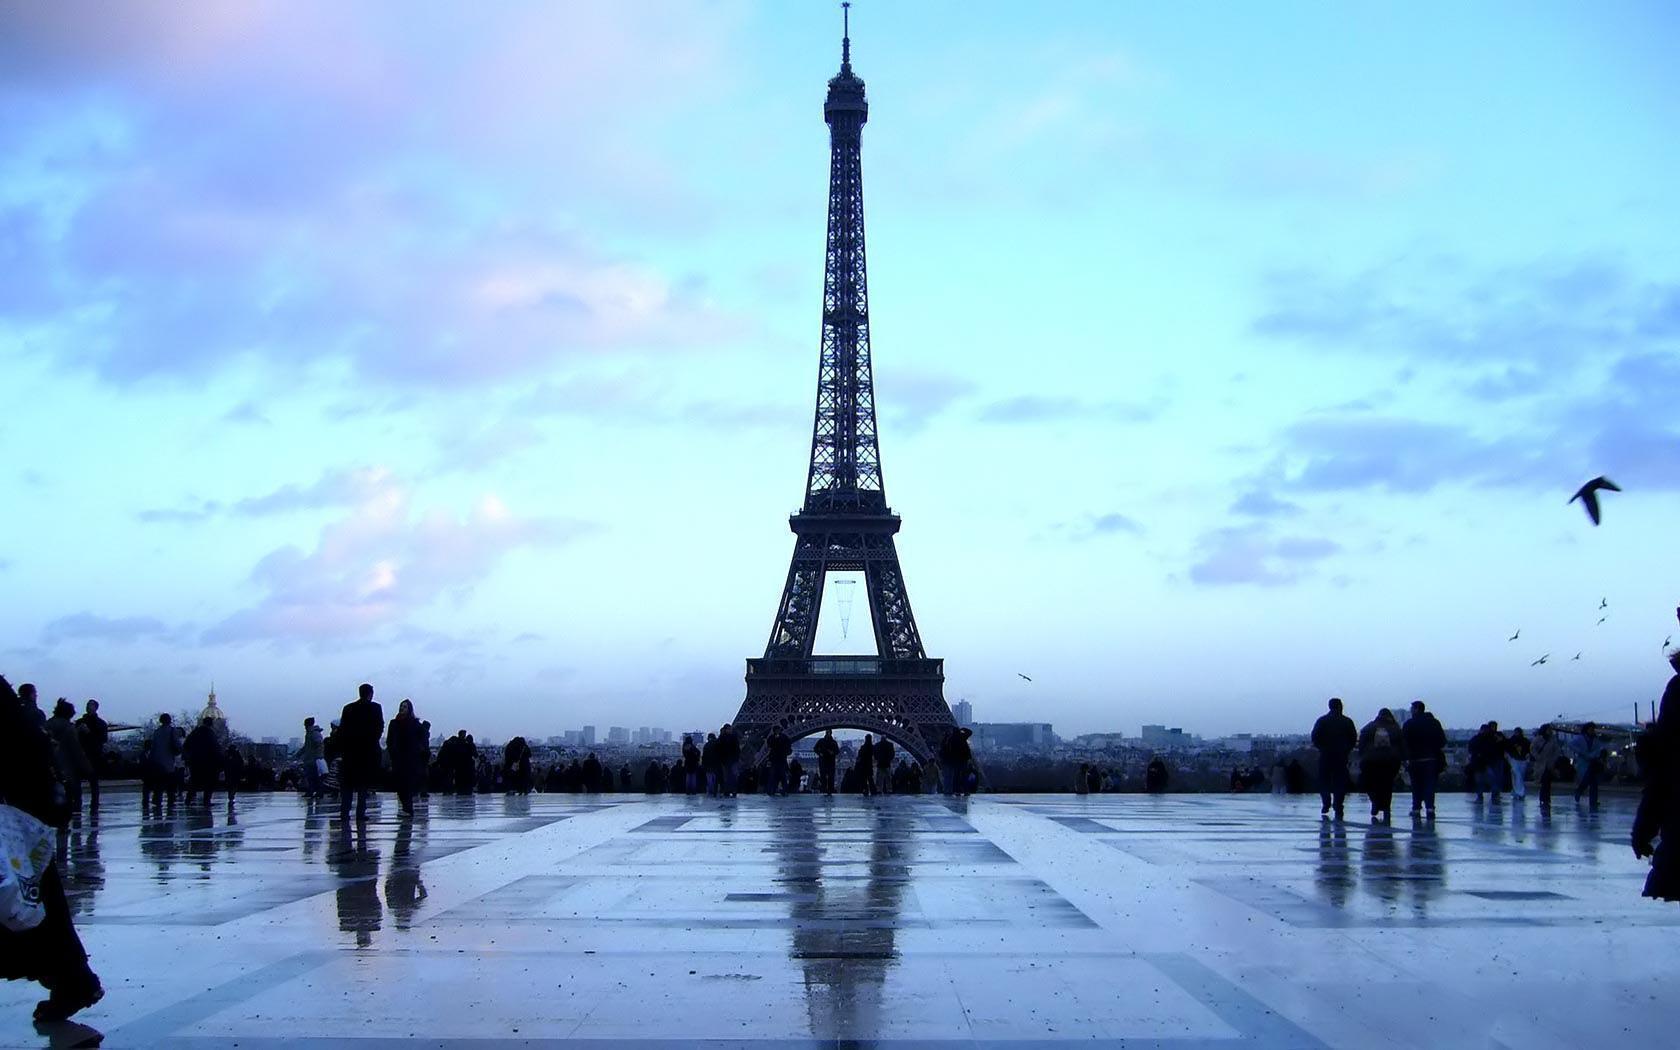 Desktop Wallpaper · Gallery · Travels · Eiffel Tower. Free